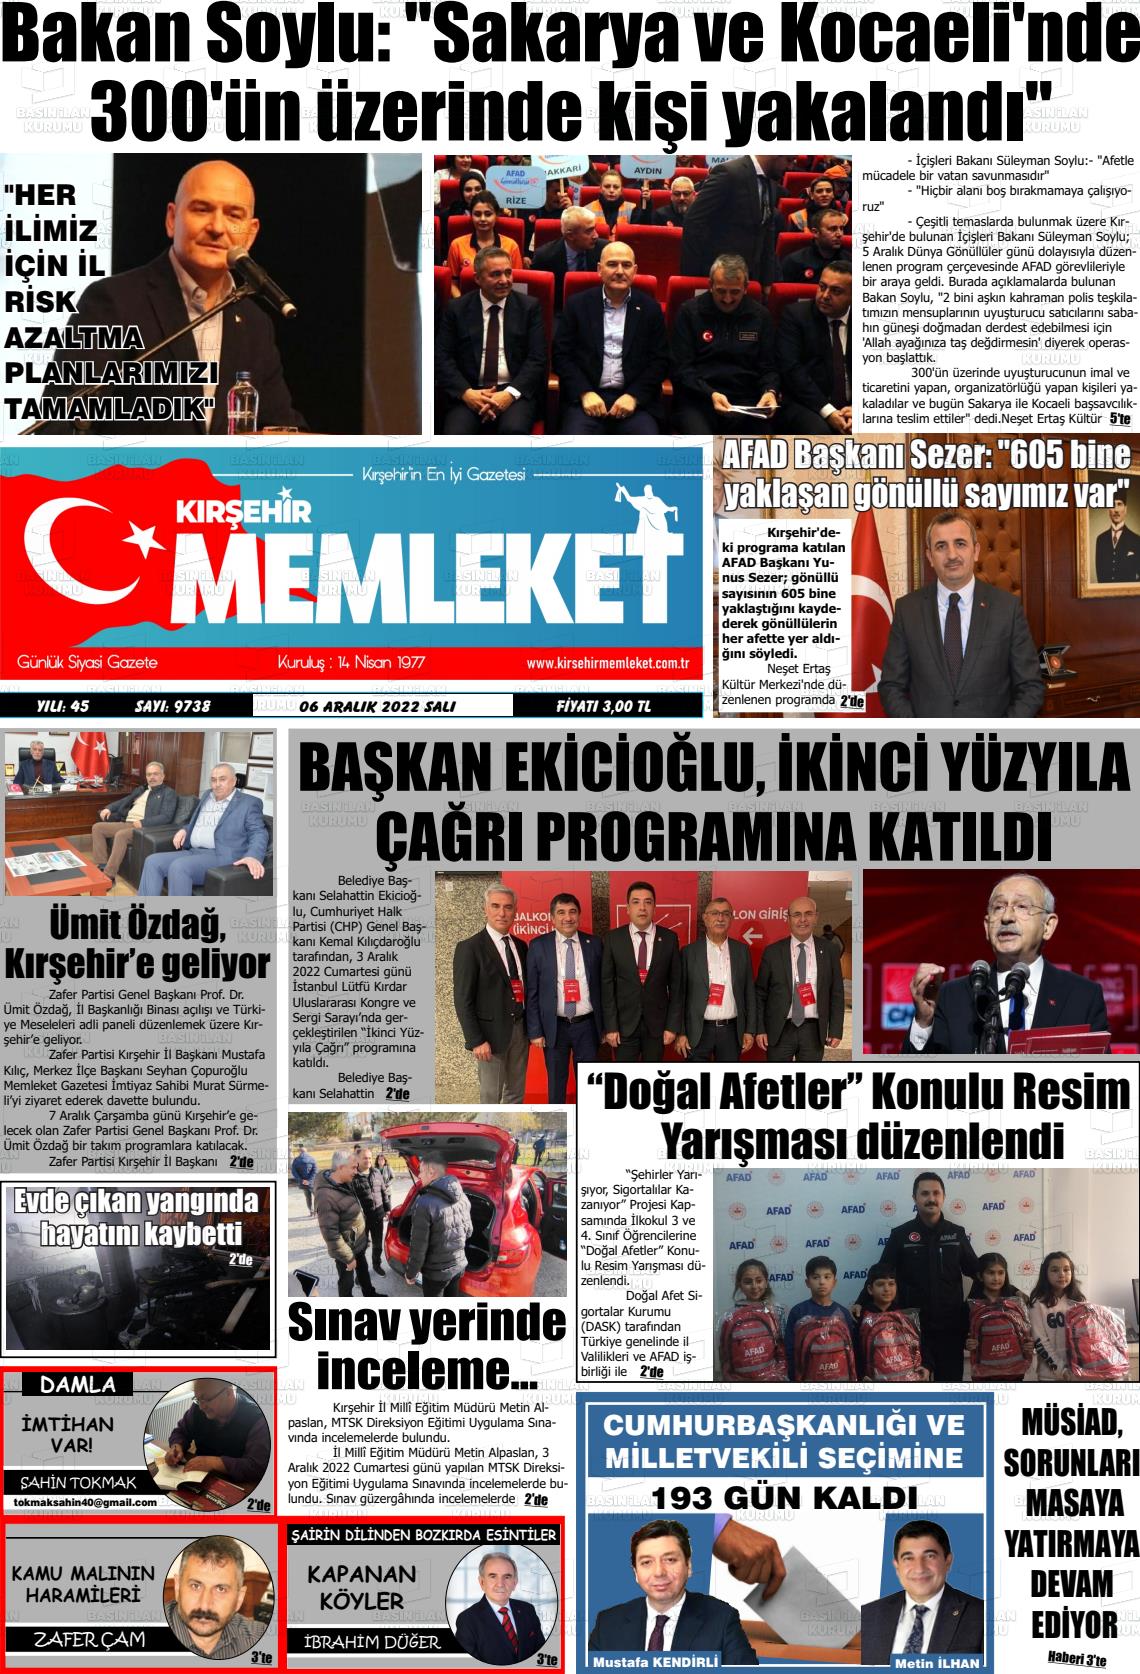 06 Aralık 2022 Kırşehir Memleket Gazete Manşeti